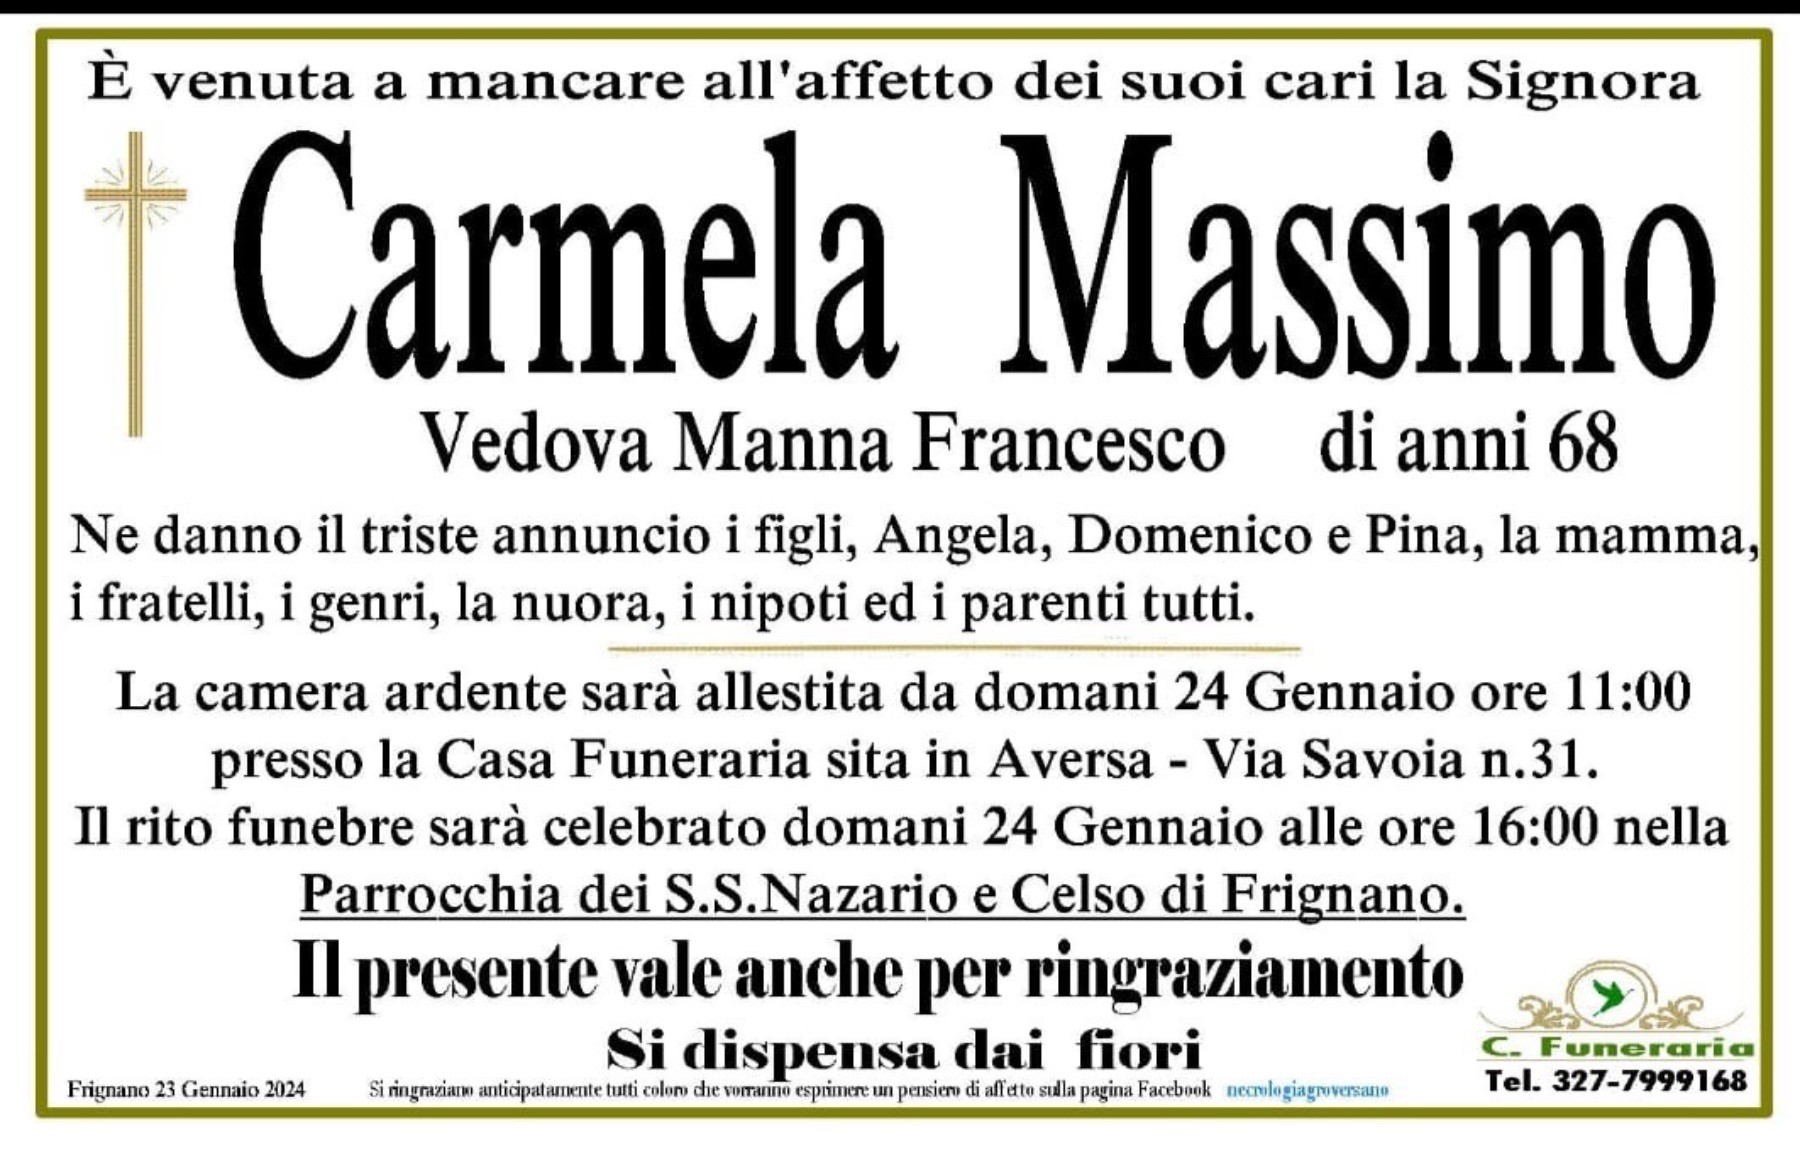 Carmela Massimo